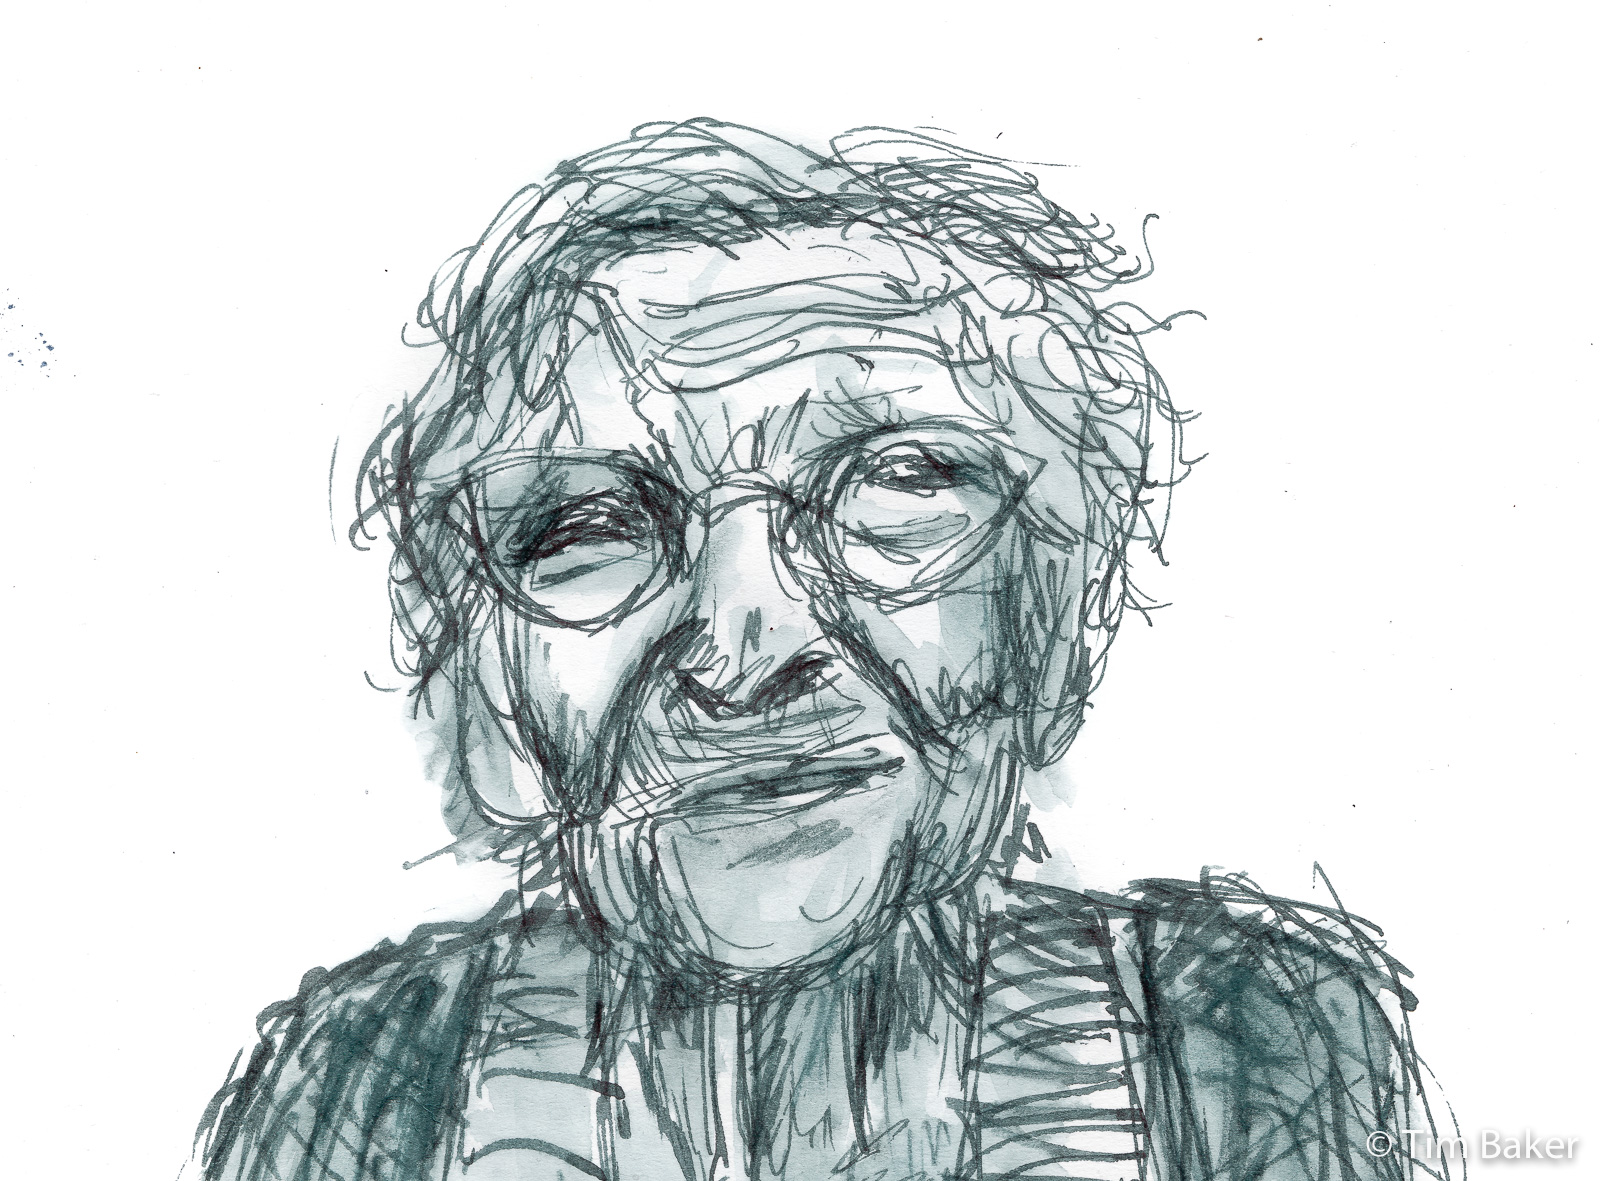 Old Woman (detail), Online Portraits No. 2, Duke 209 fude pen with Koh-I-Noor Black Document Ink, sketchbook.